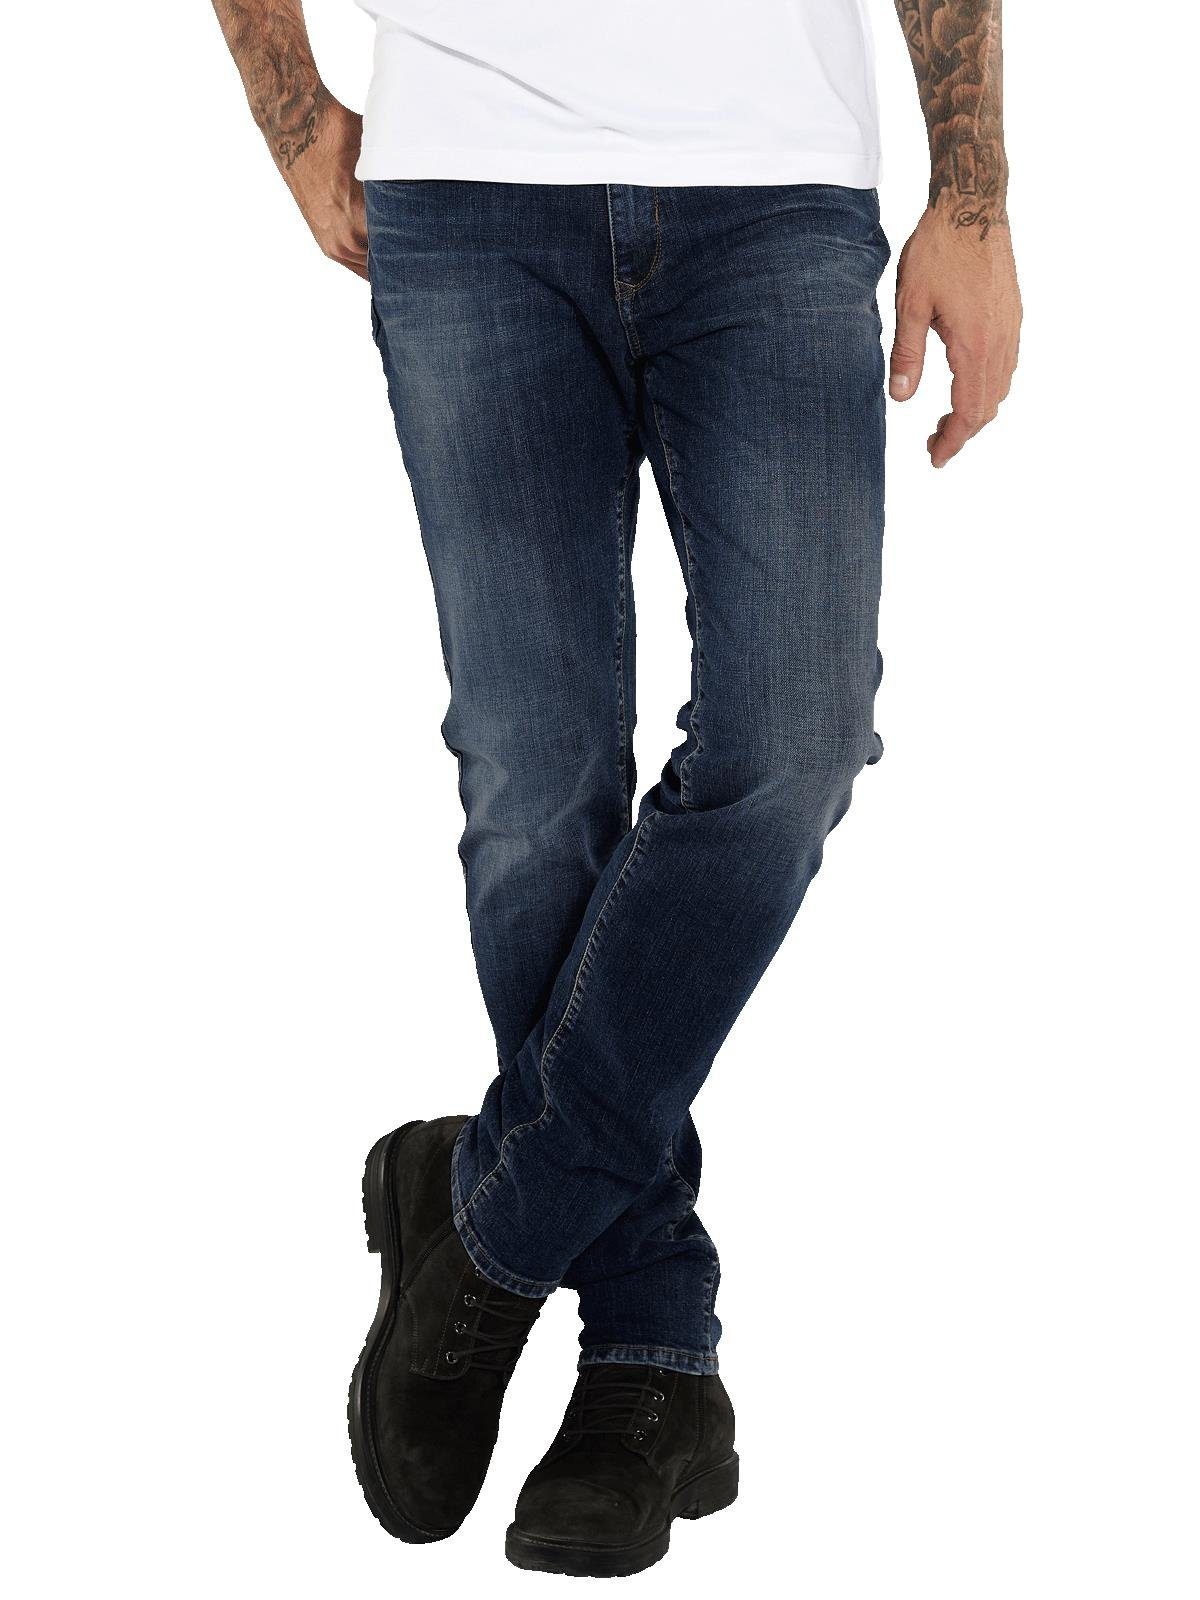 emilio adani Stretch-Jeans Super-Stretch-Jeans slim fit | Stretchjeans